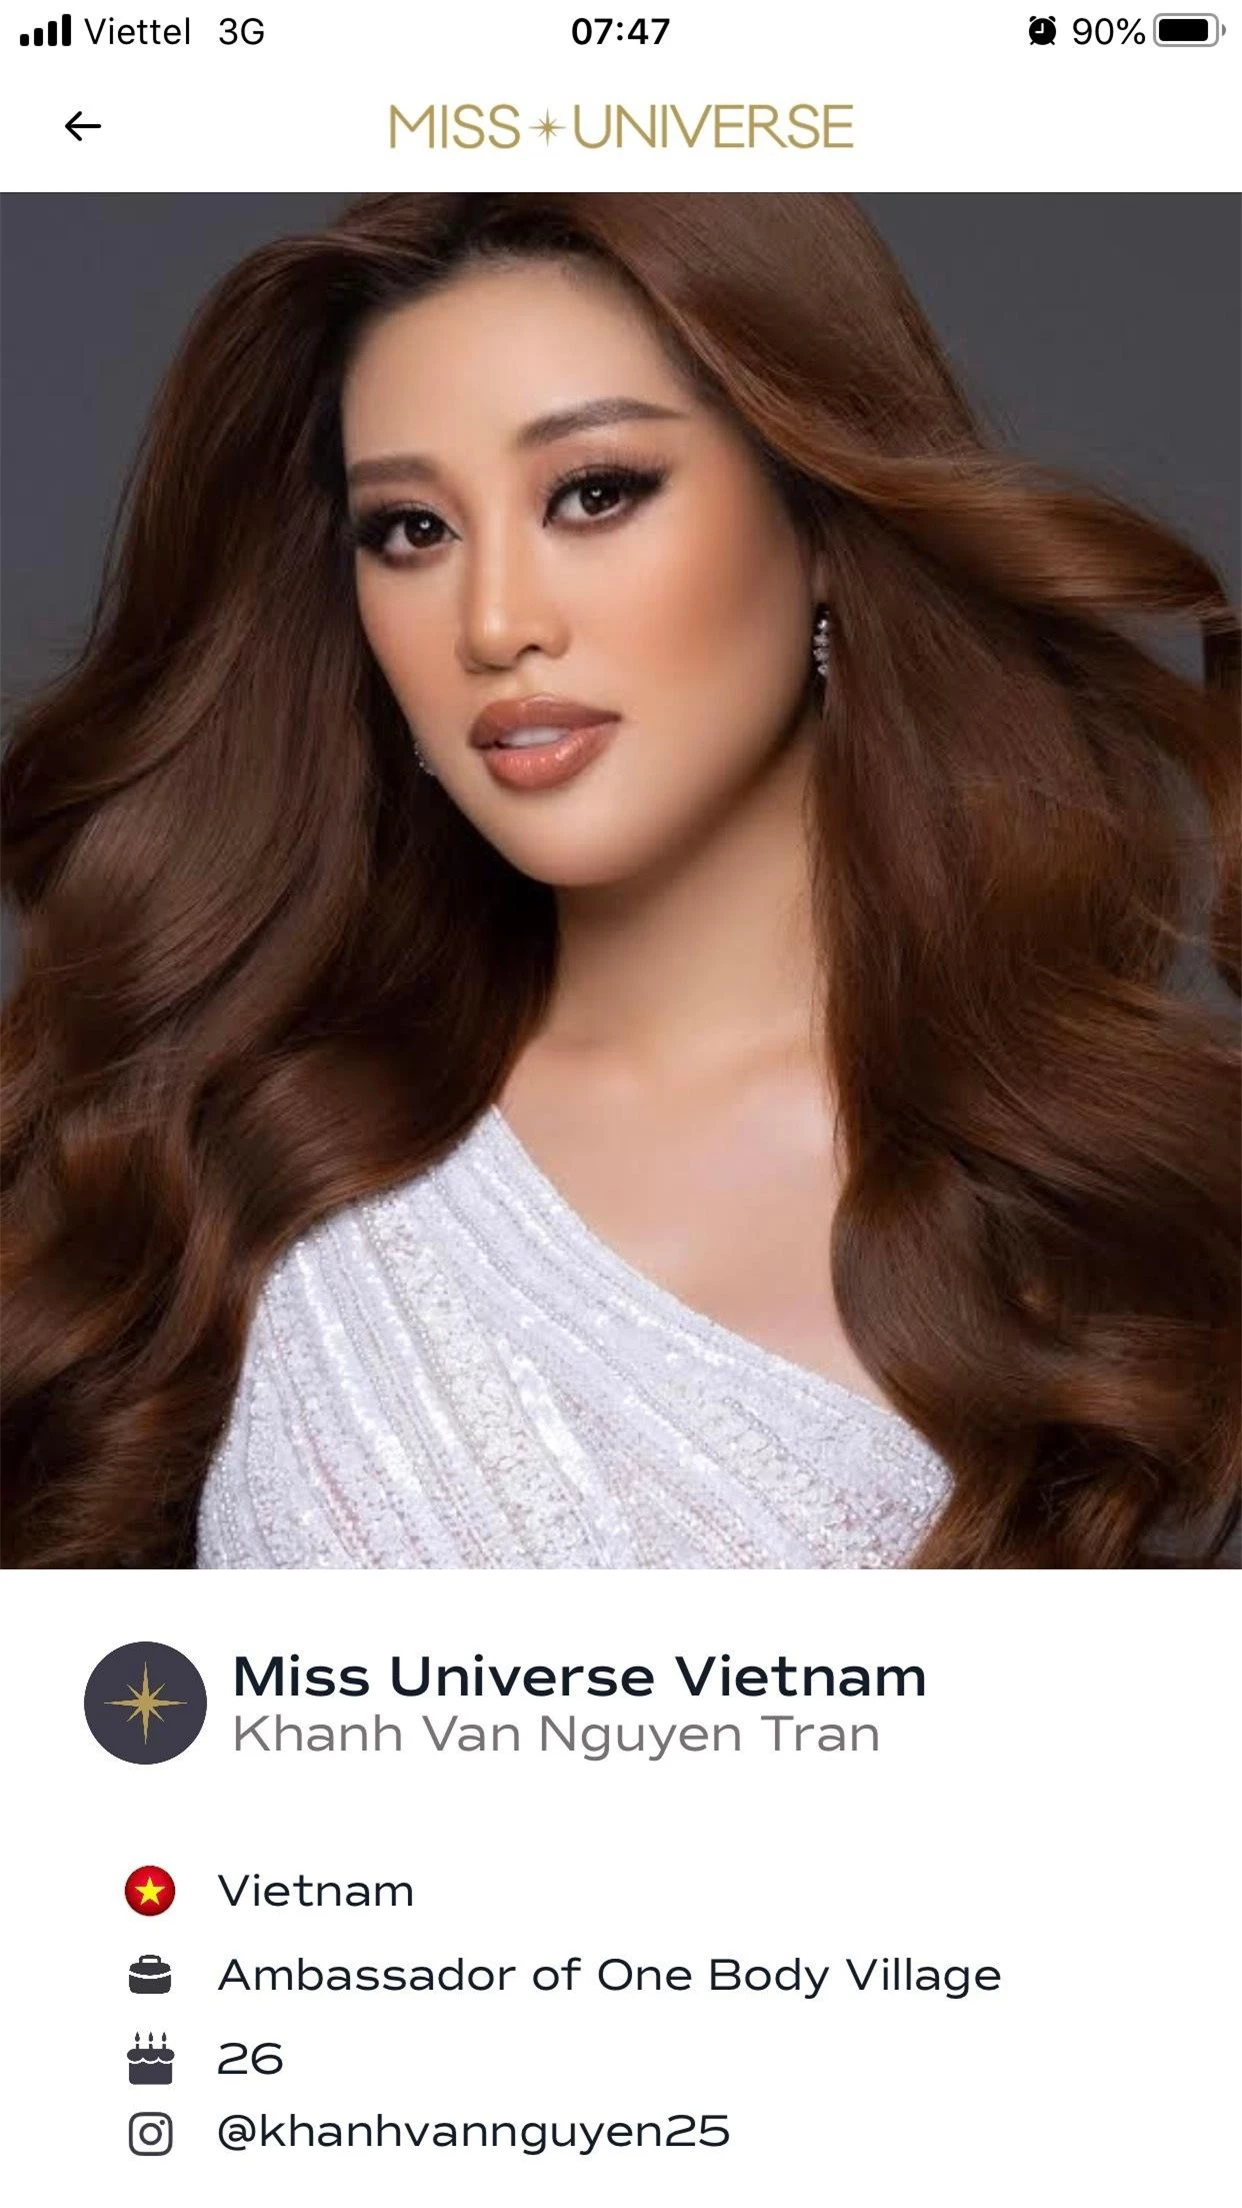 Ảnh profile chính thức của Khánh Vân được đăng tải trên trang chủ Miss Universe ảnh 1